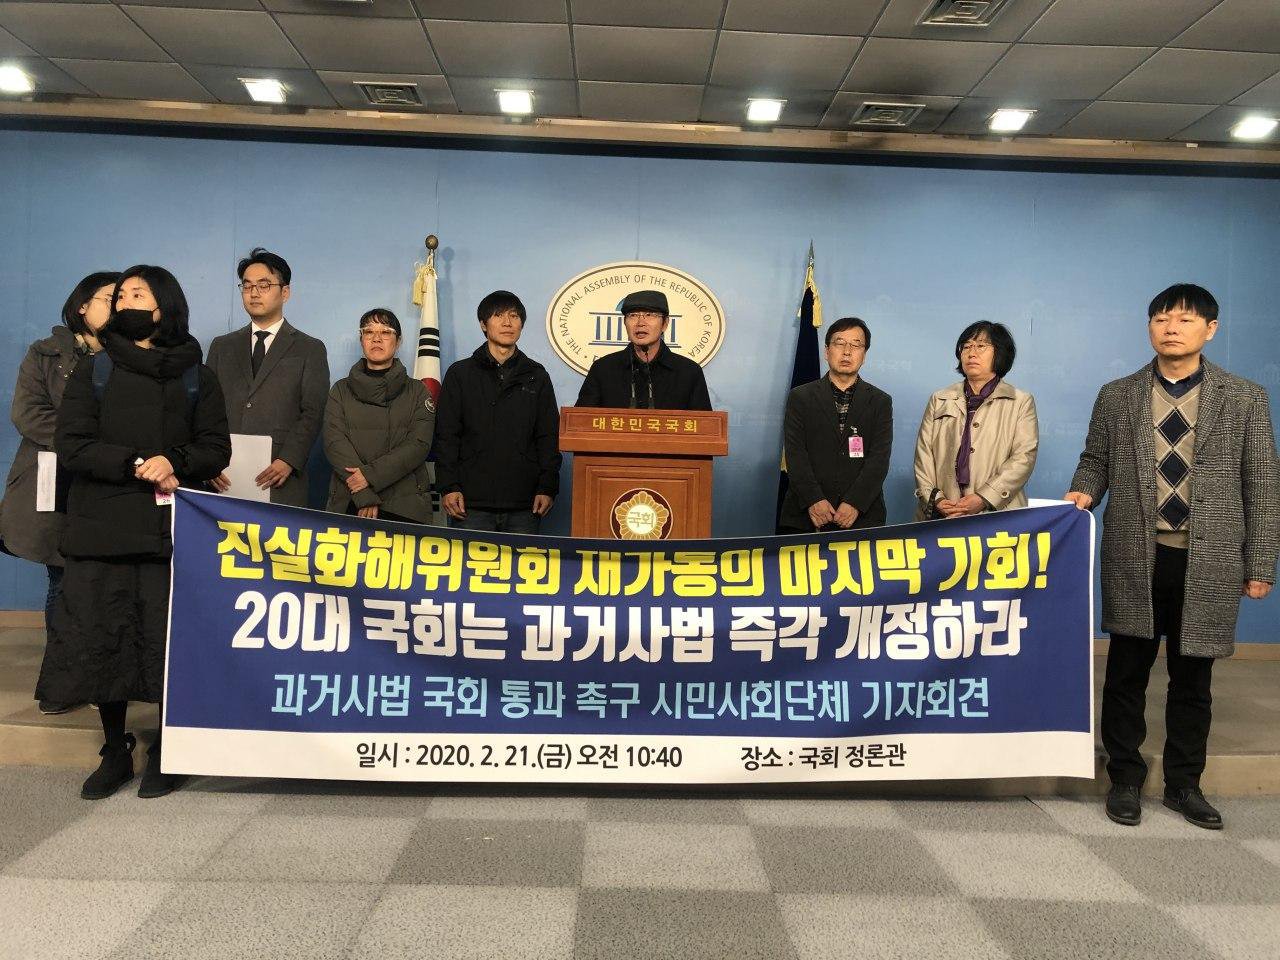 지난 2월 21일 국회에서 국내 300여개 시민사회단체가 20대 국회의 과거사법 개정을 촉구했습니다.